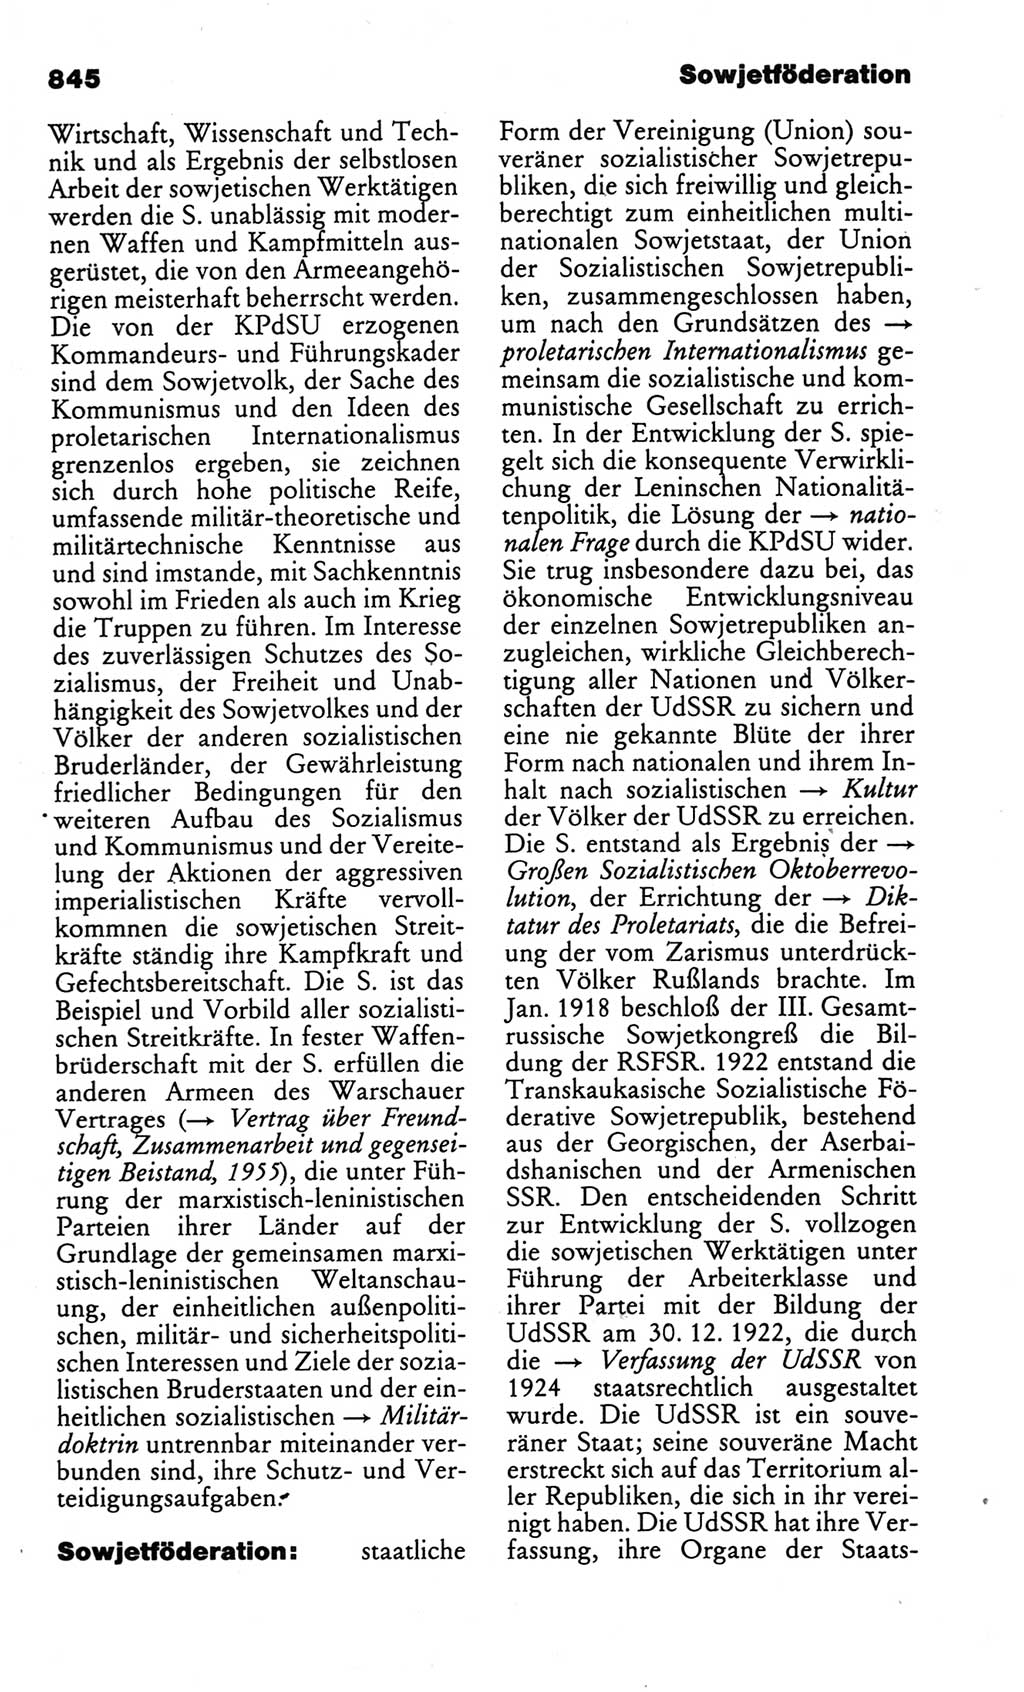 Kleines politisches Wörterbuch [Deutsche Demokratische Republik (DDR)] 1986, Seite 845 (Kl. pol. Wb. DDR 1986, S. 845)